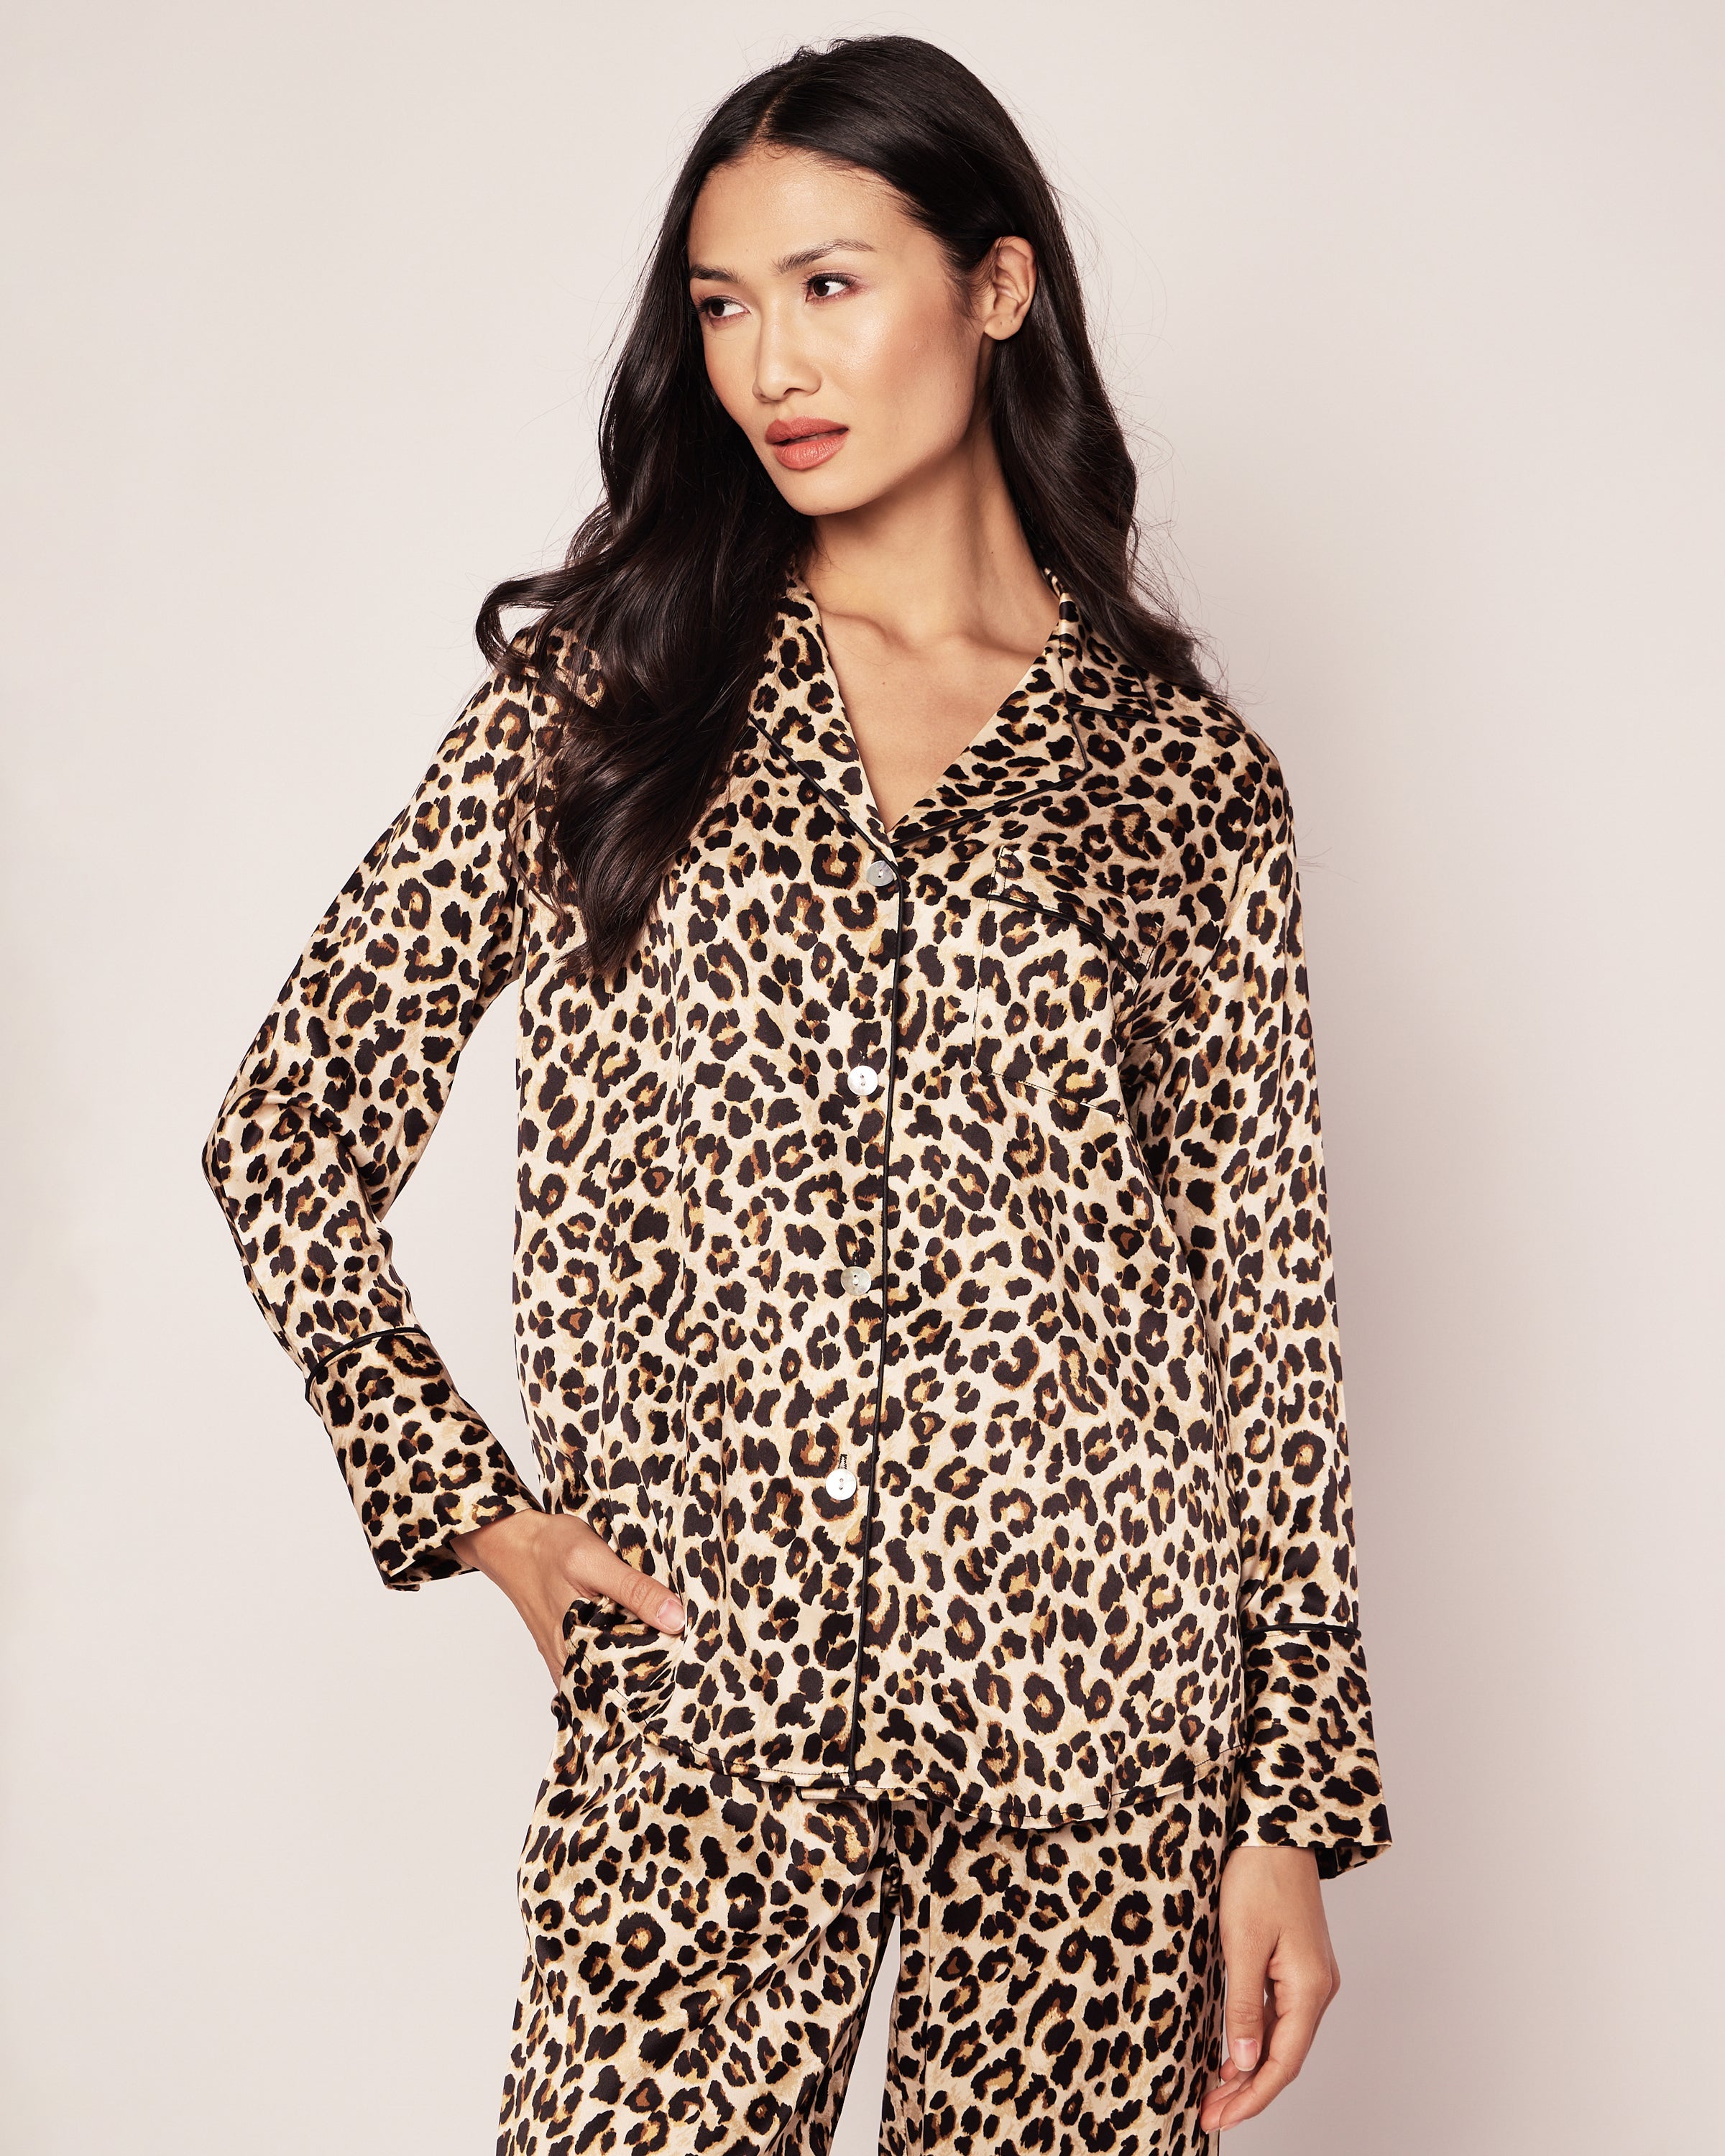 Veronica Beard x Petite Plume Silk Leopard Pajama Set